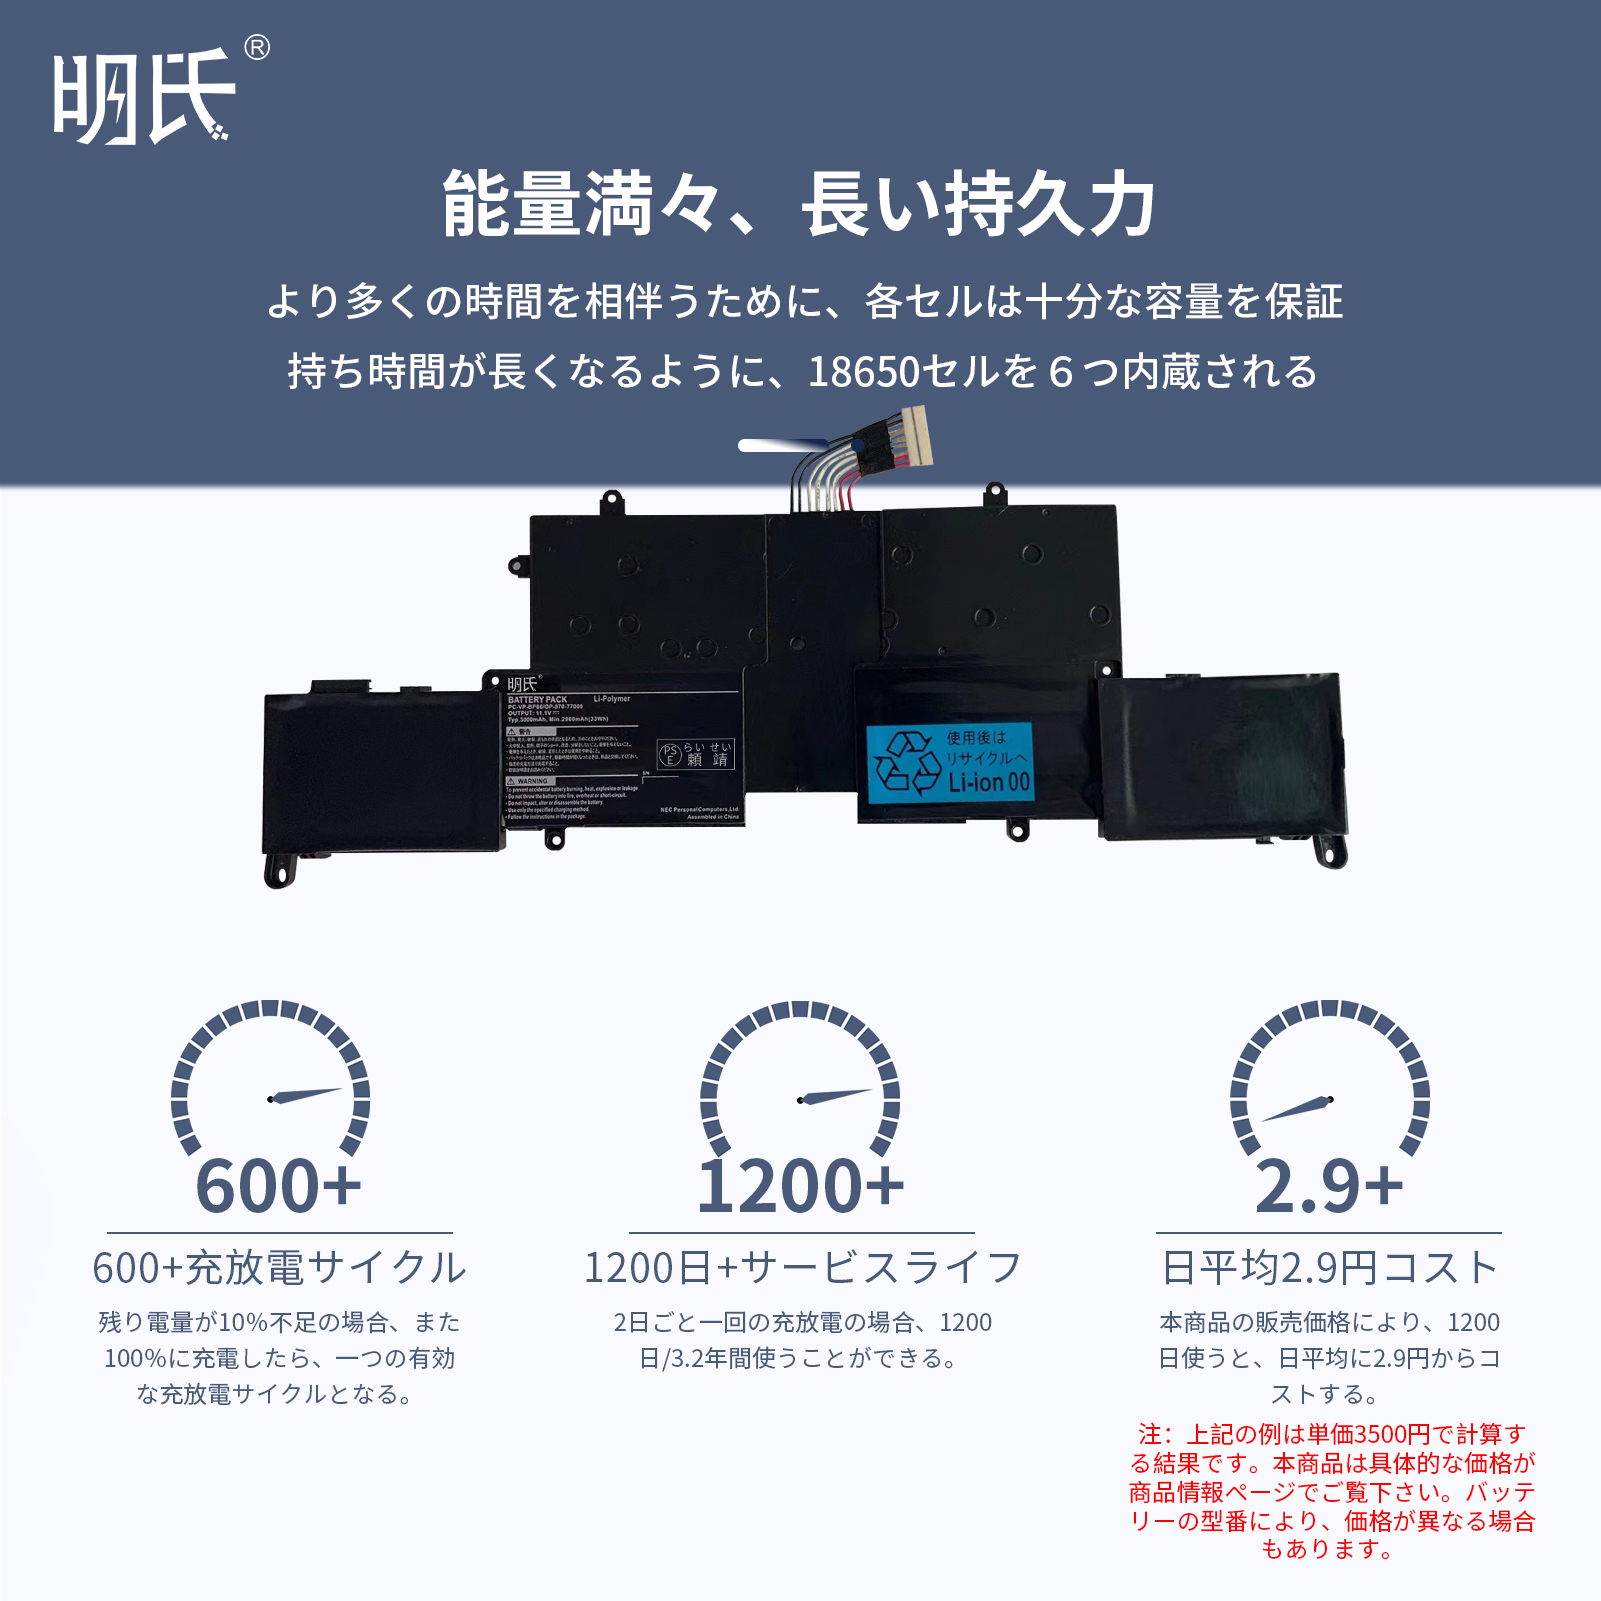 minshi】NEC LaVie Z PC-LZ550MSS【3000mAh 11.1V】対応用 高性能